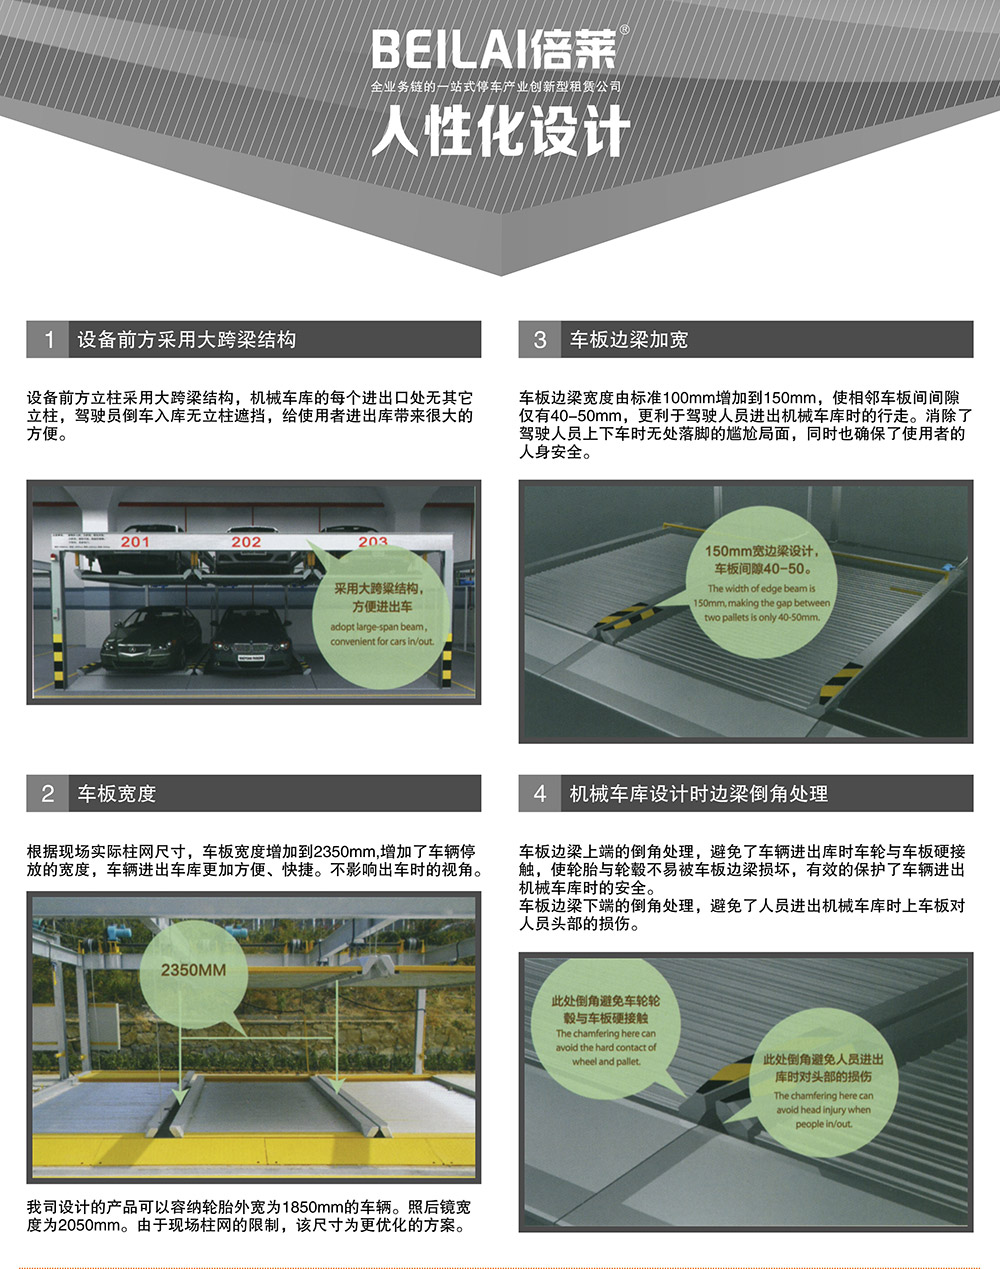 四川成都负二正二地坑PSH4D2四层升降横移式立体停车设备人性化设计.jpg